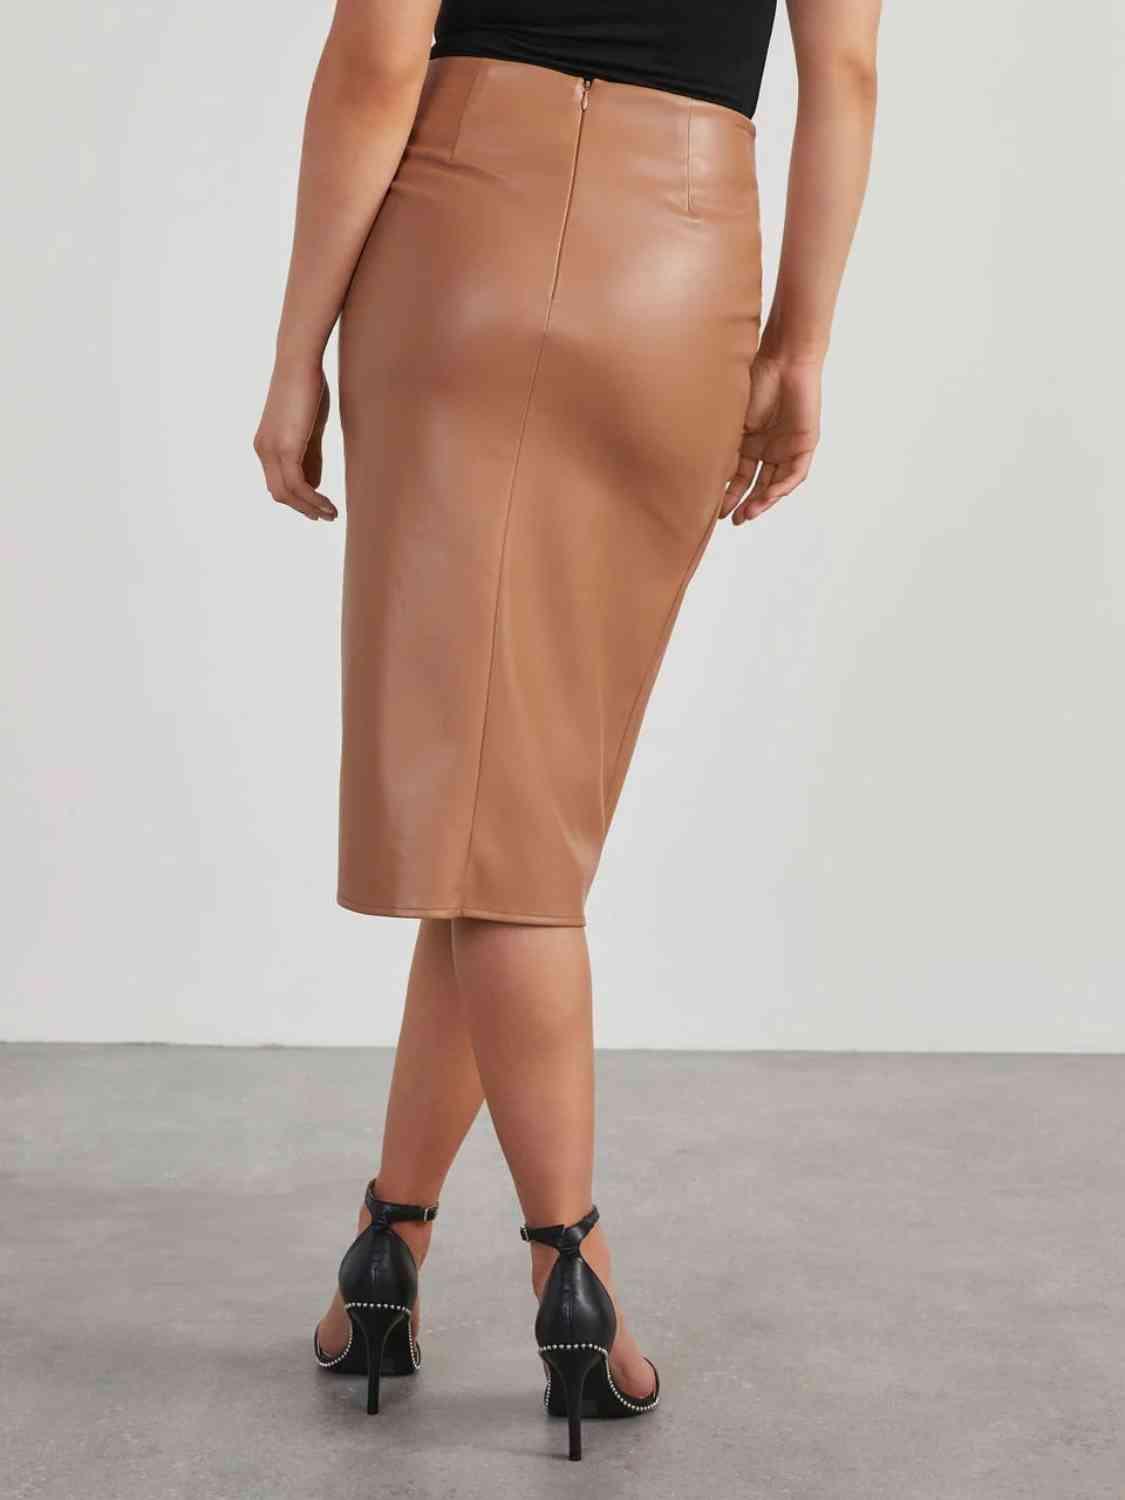 Fab High Waist Skirt - Shop SWR Luxe